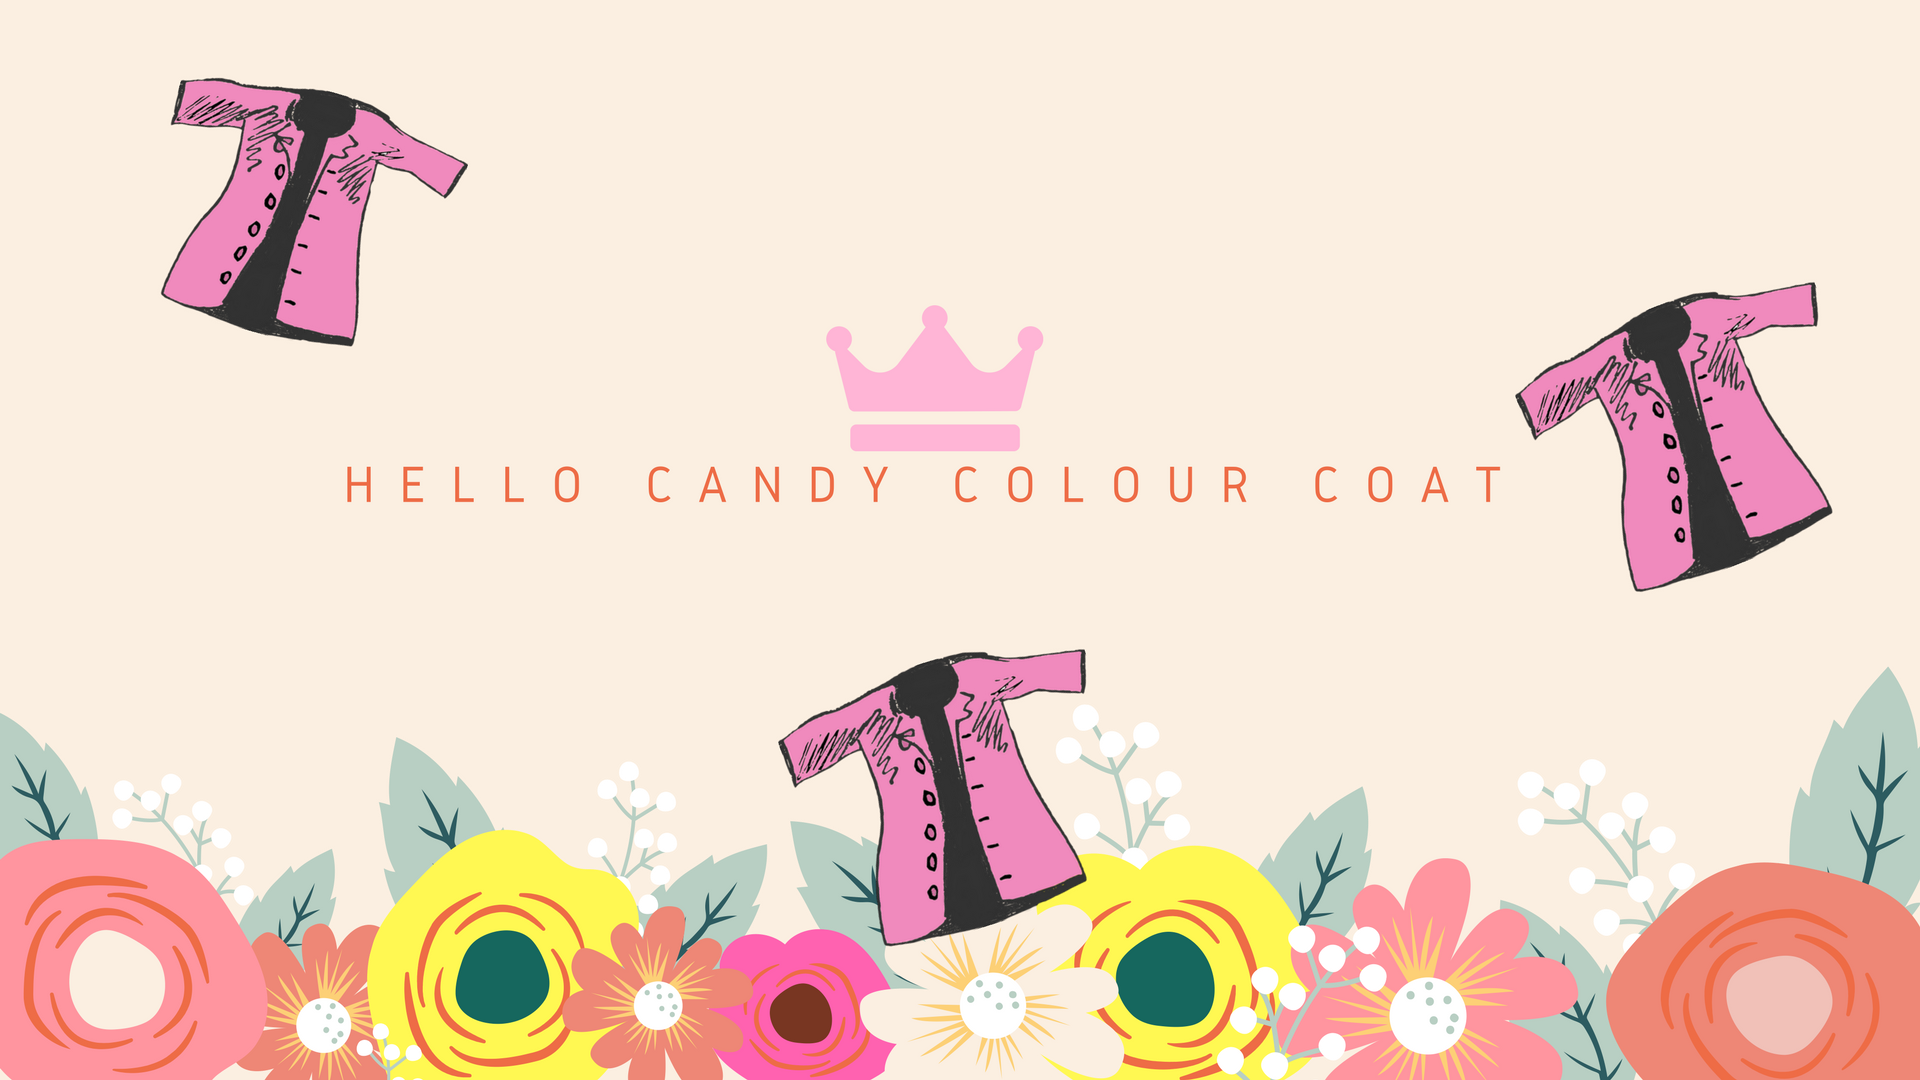 Candy Colour Coat